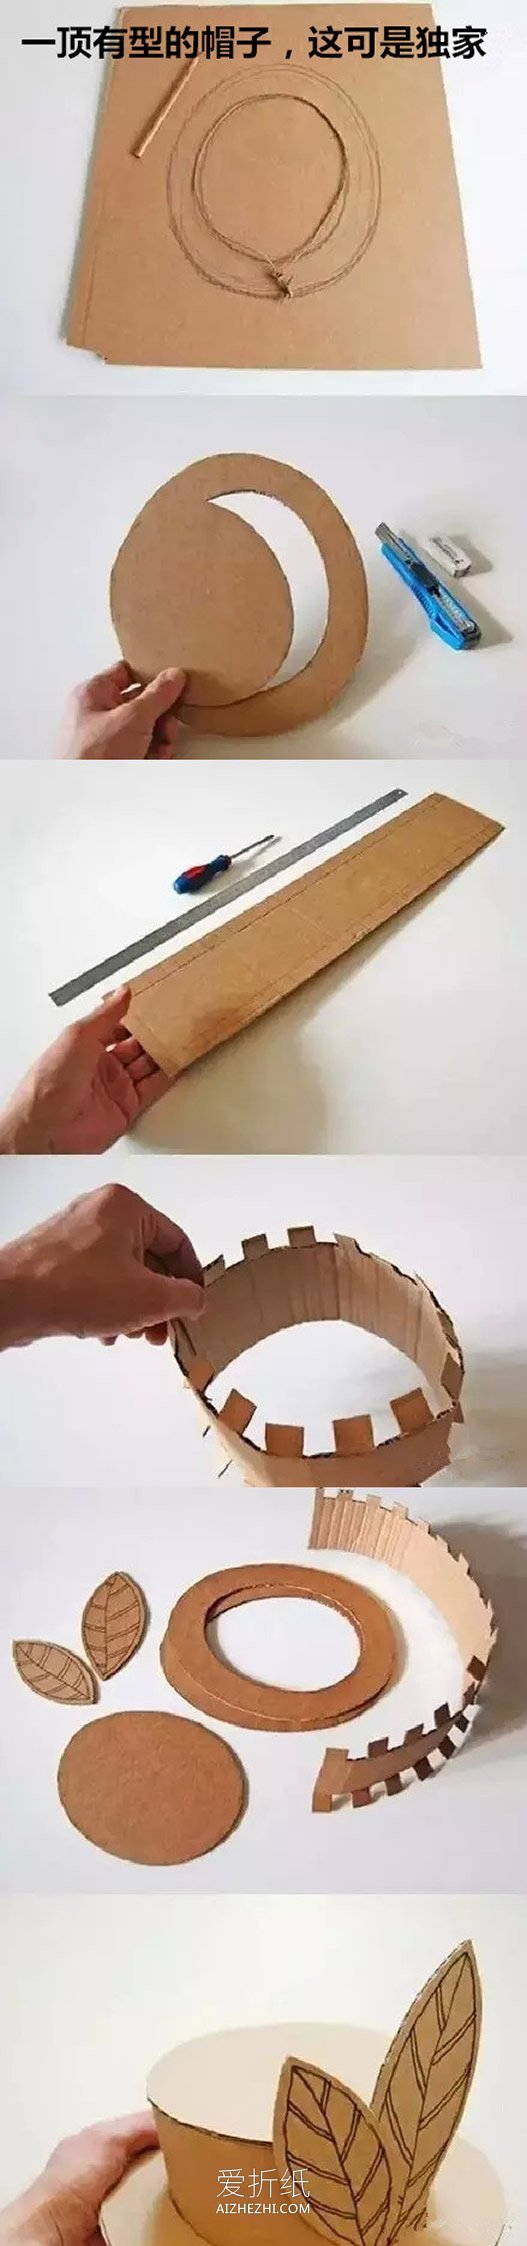 怎么用纸箱做儿童玩具 快递纸箱制作玩具方法- www.aizhezhi.com